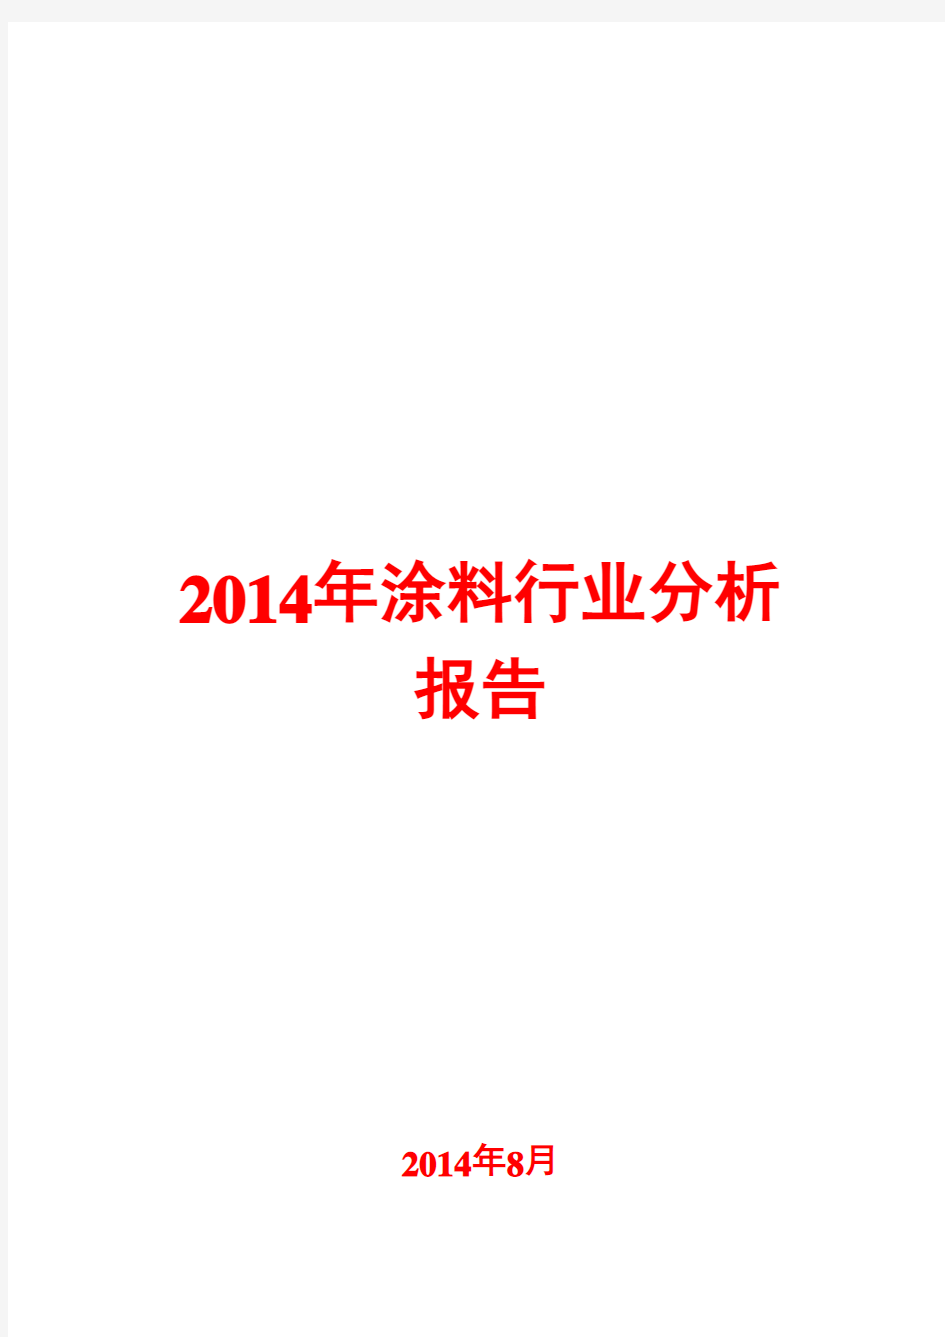 2014年涂料行业分析报告